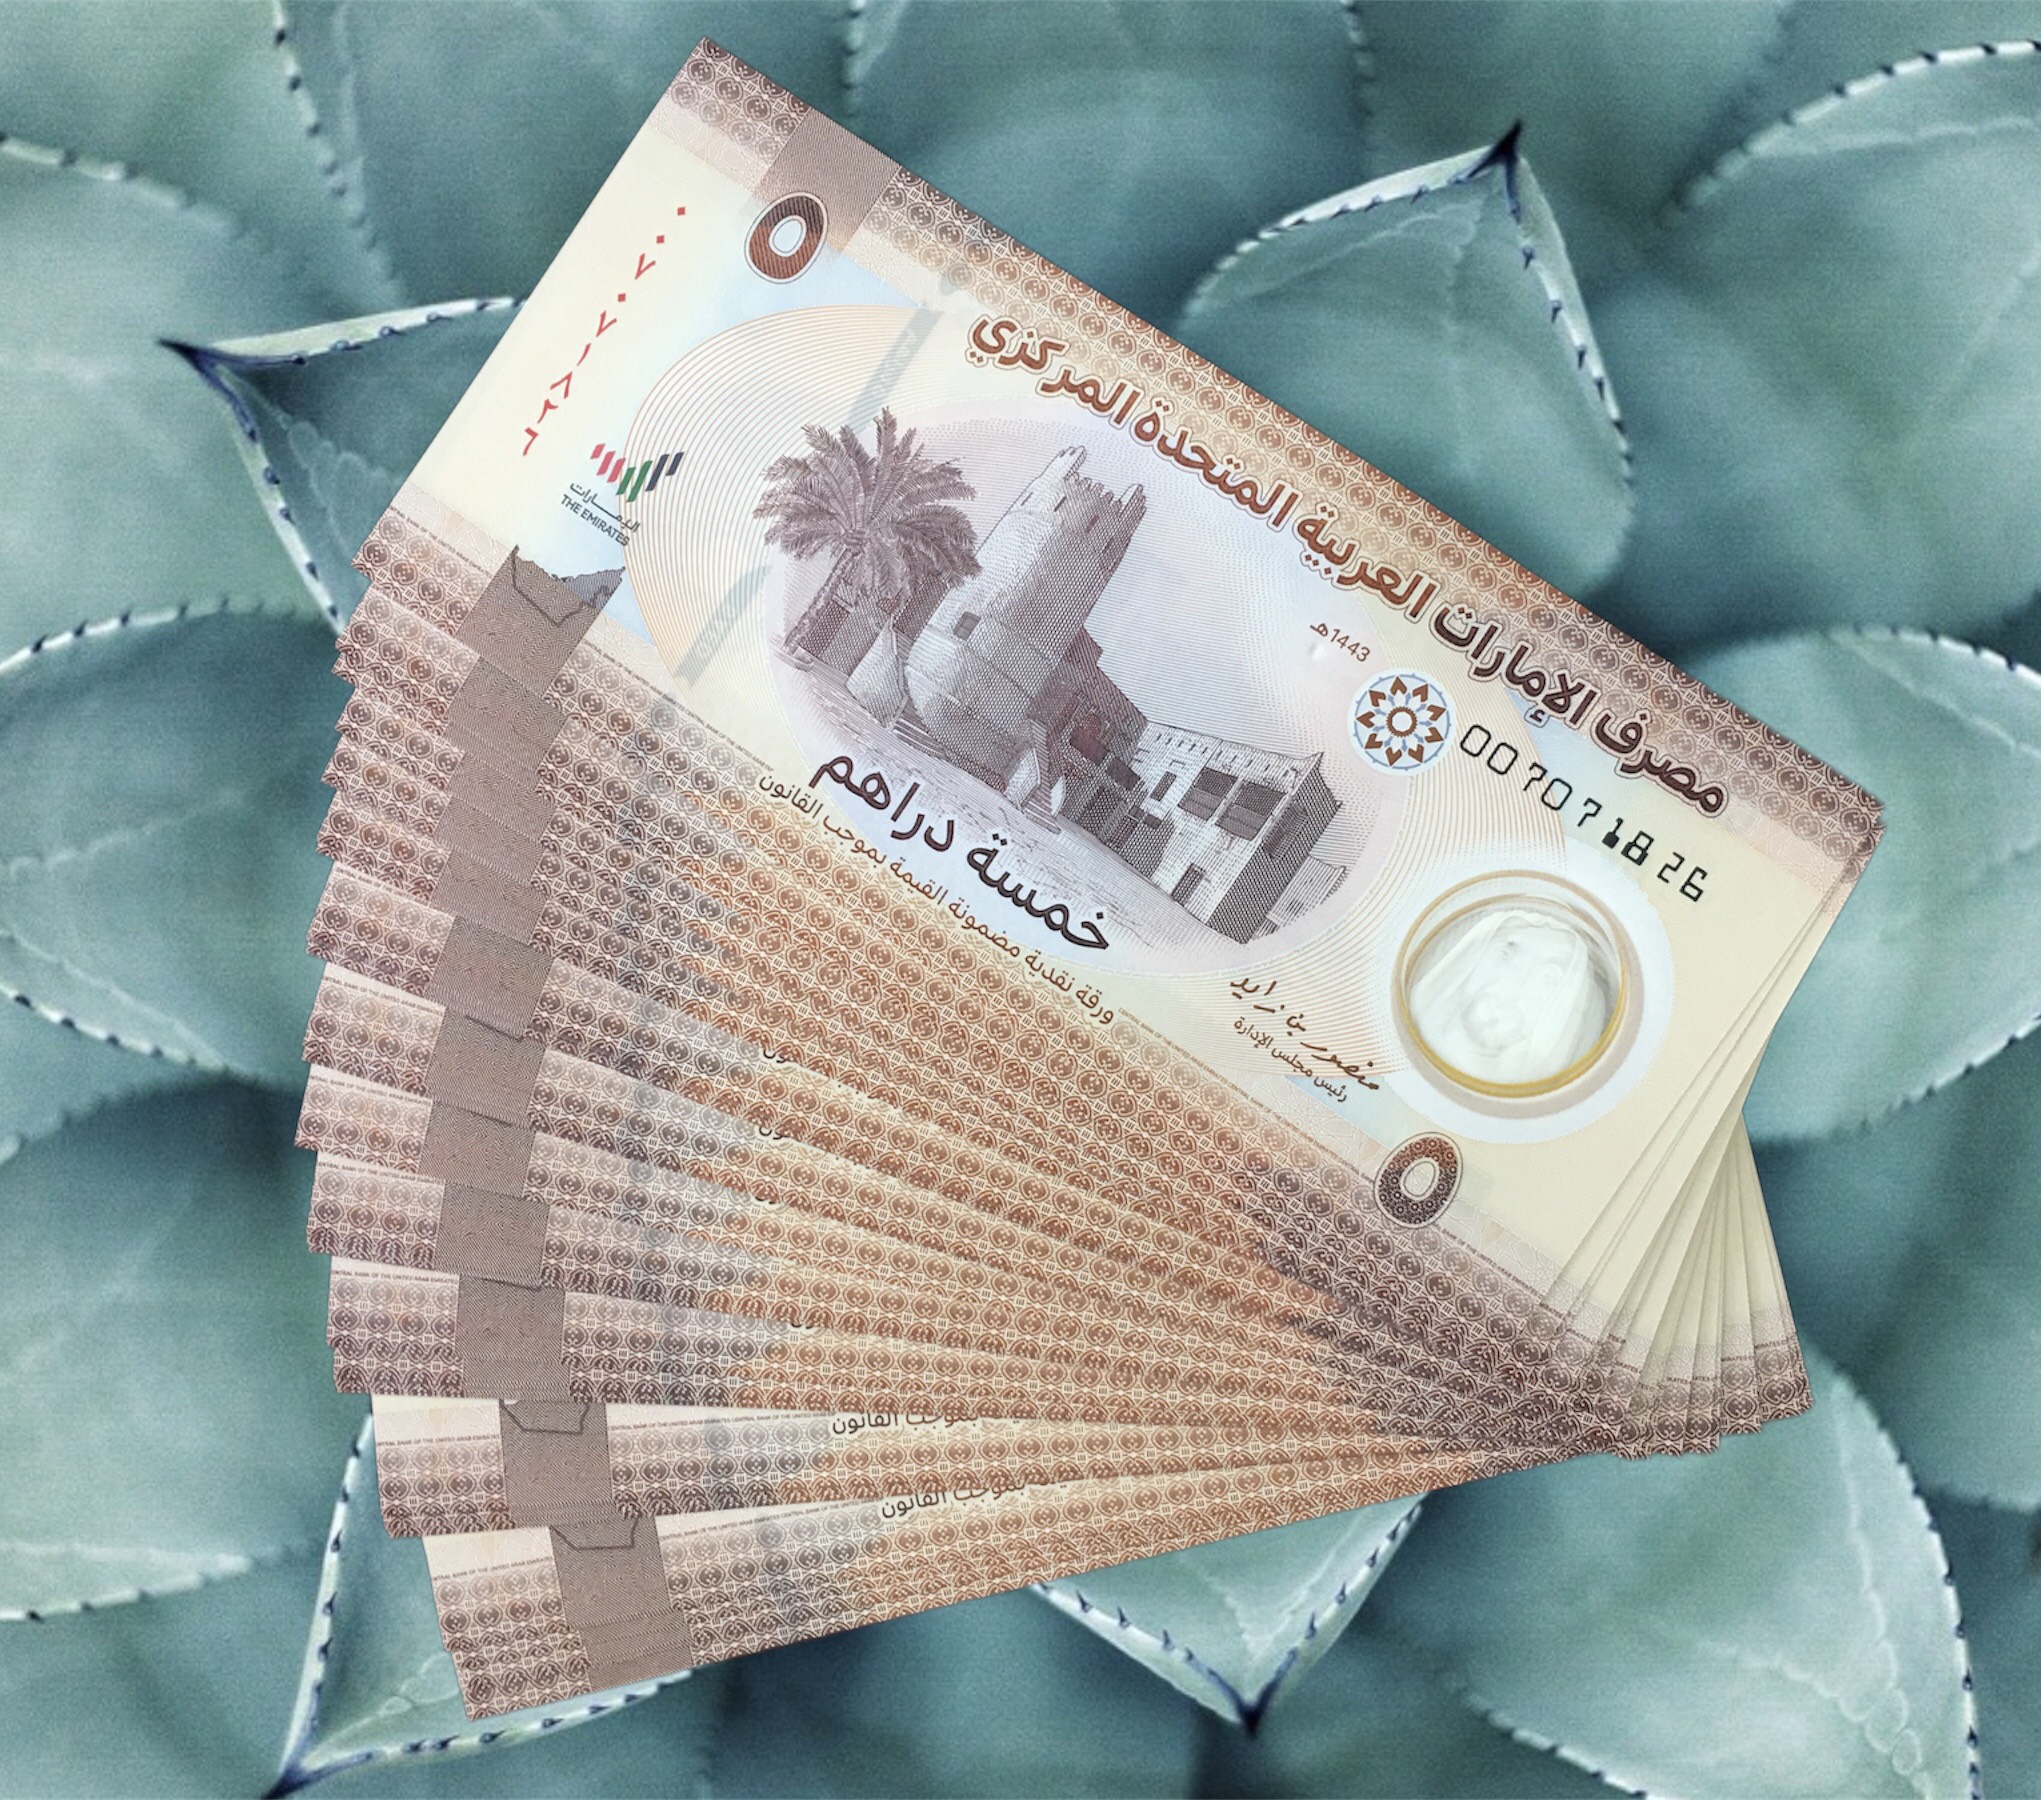 Các tiểu vương quốc Ả Rập Thống Nhất 5 Dihams UAE sưu tầm 2022 - Tiền mới keng 100%